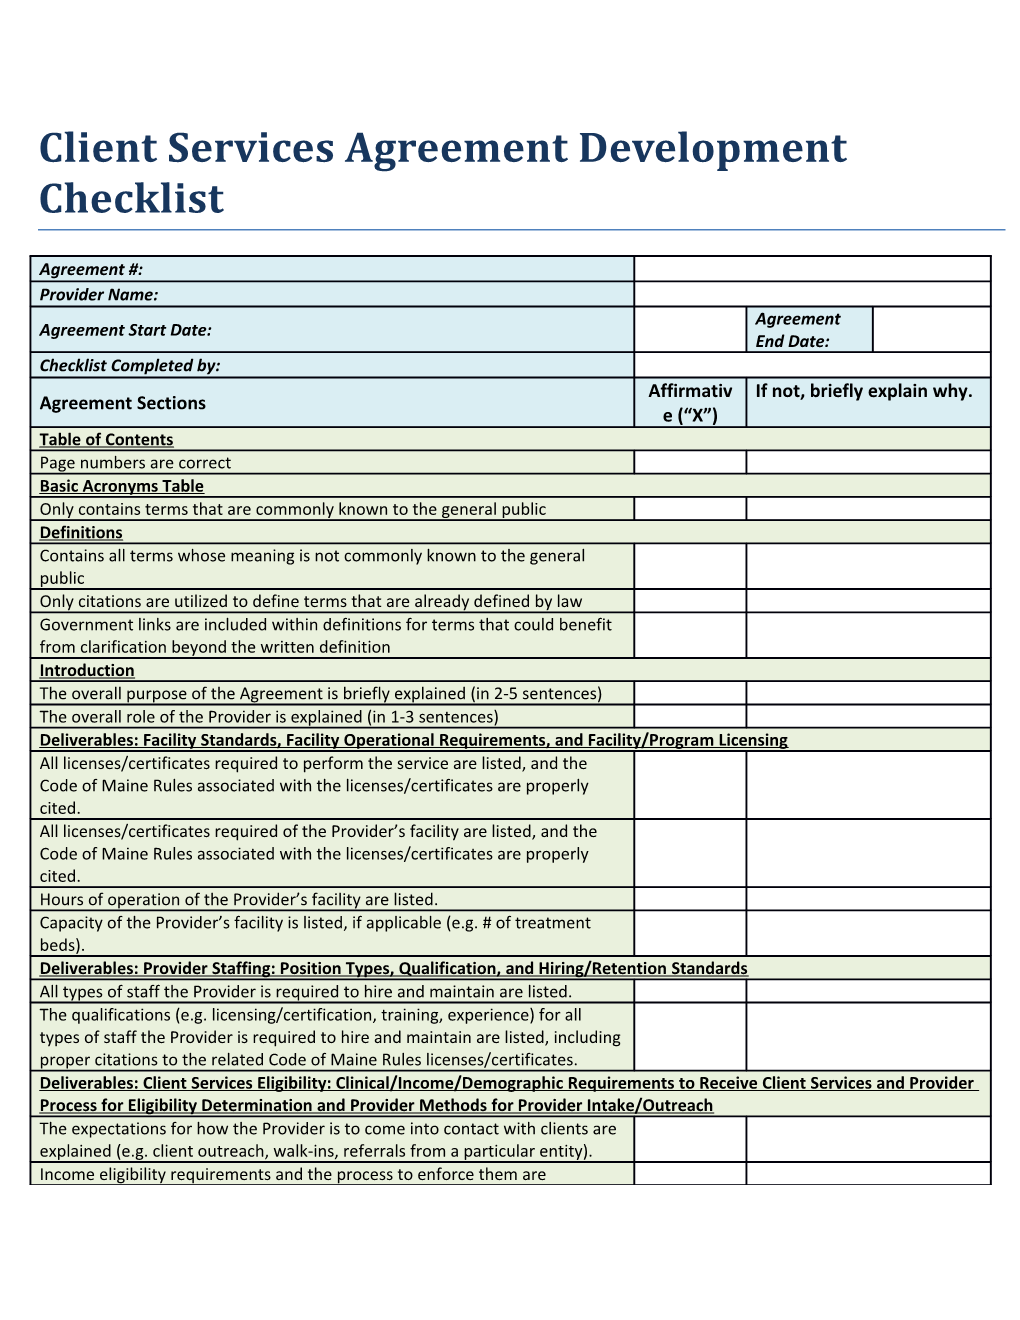 Client Services Agreement Development Checklist